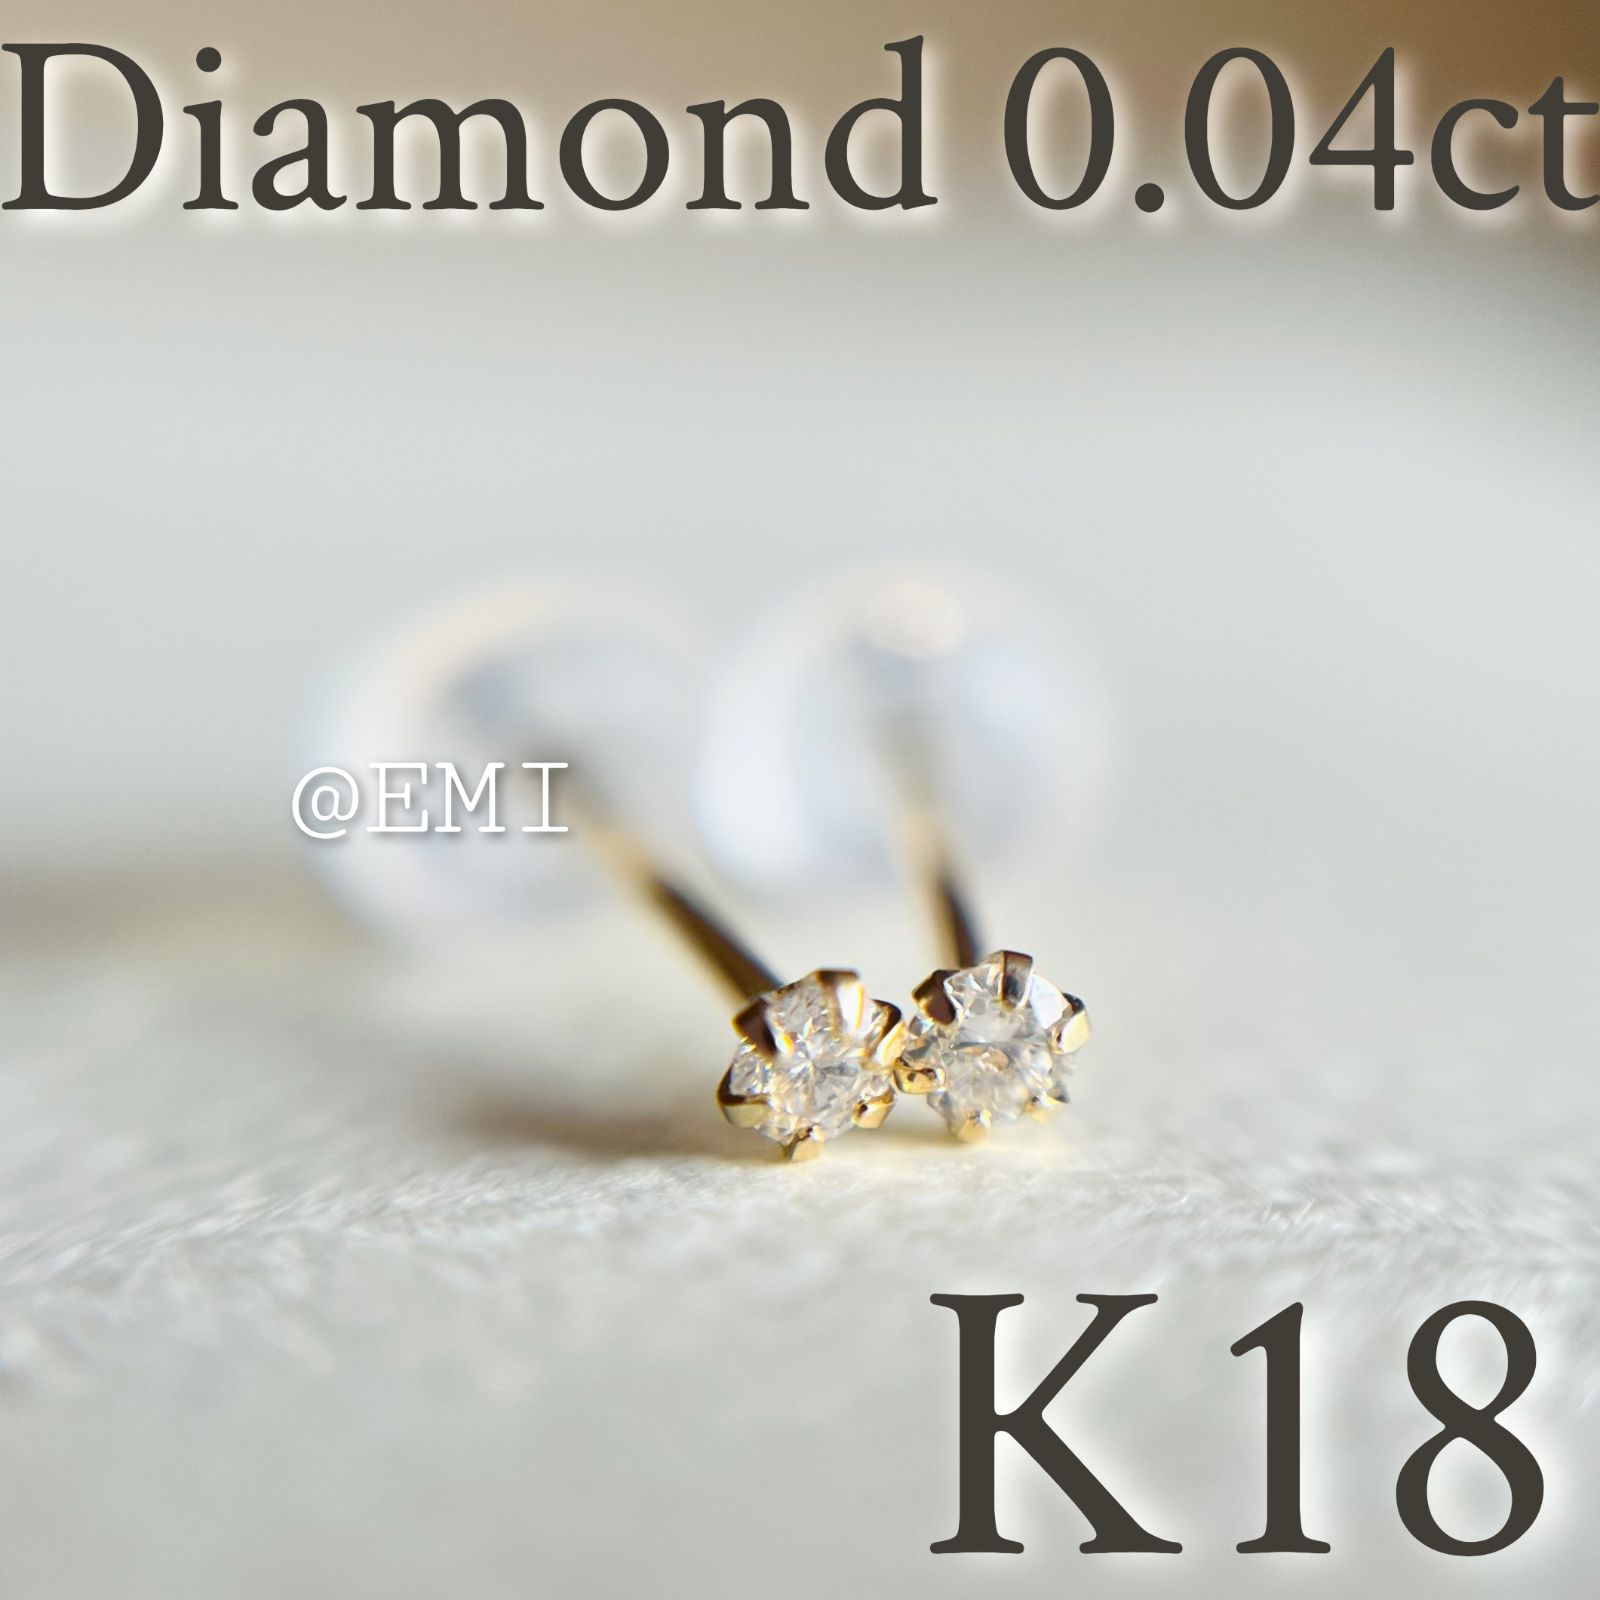 K18 18金イエローゴールド 天然ダイヤモンド0.04ct ピアス - Emi